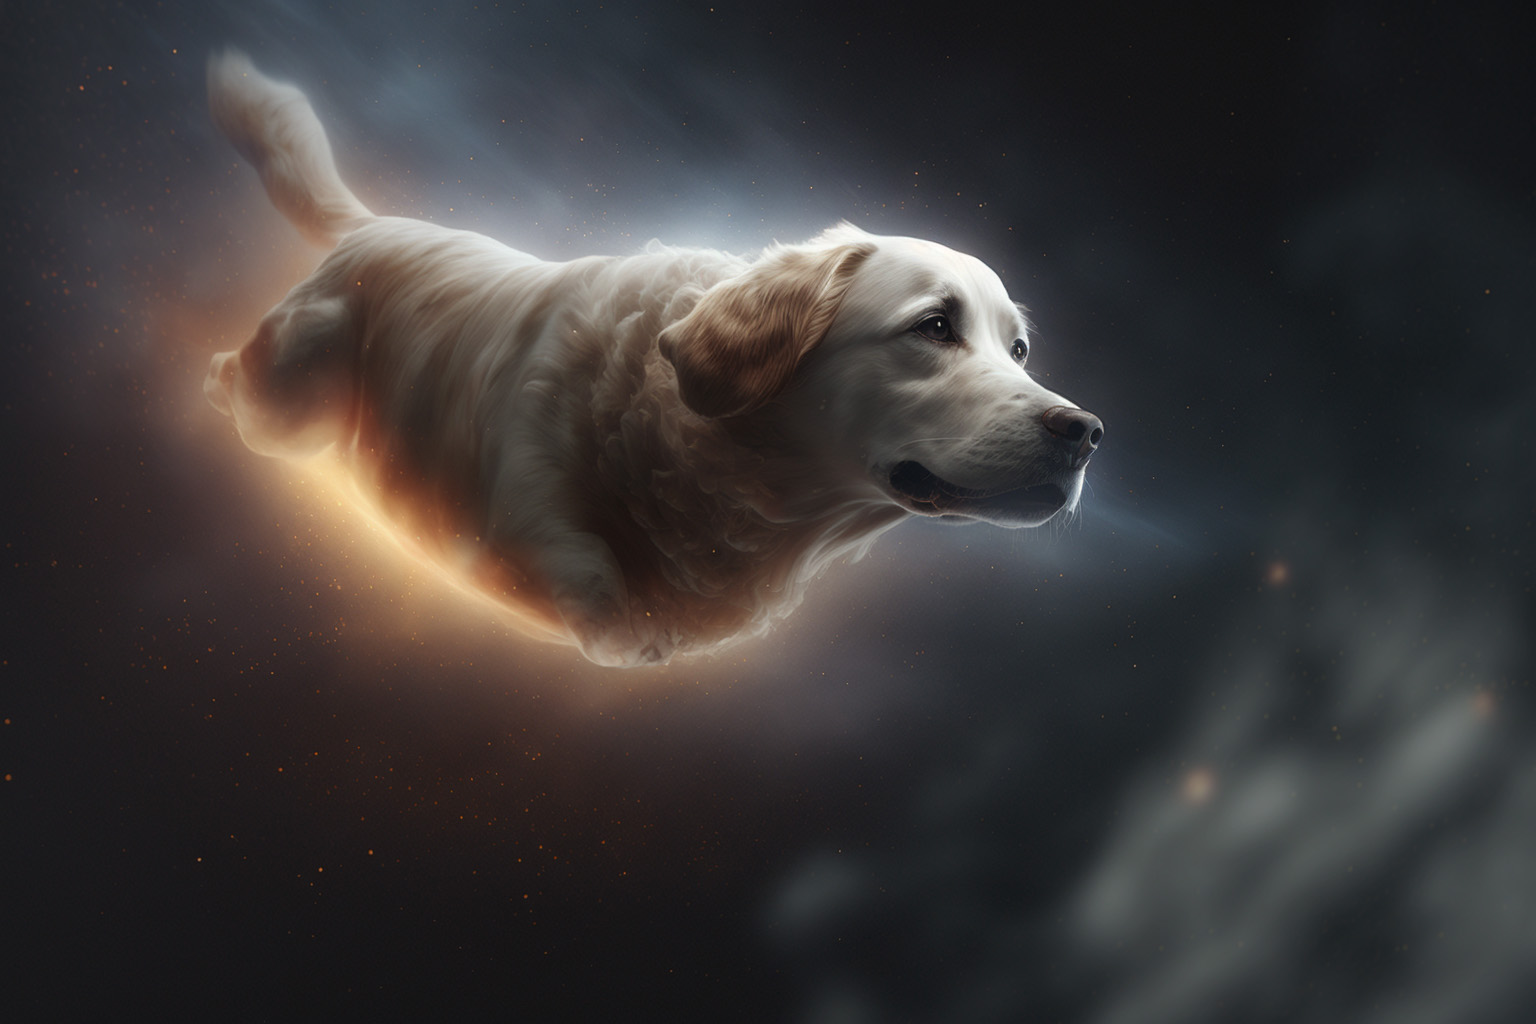 köpekler uzayda yaşayabilir mi